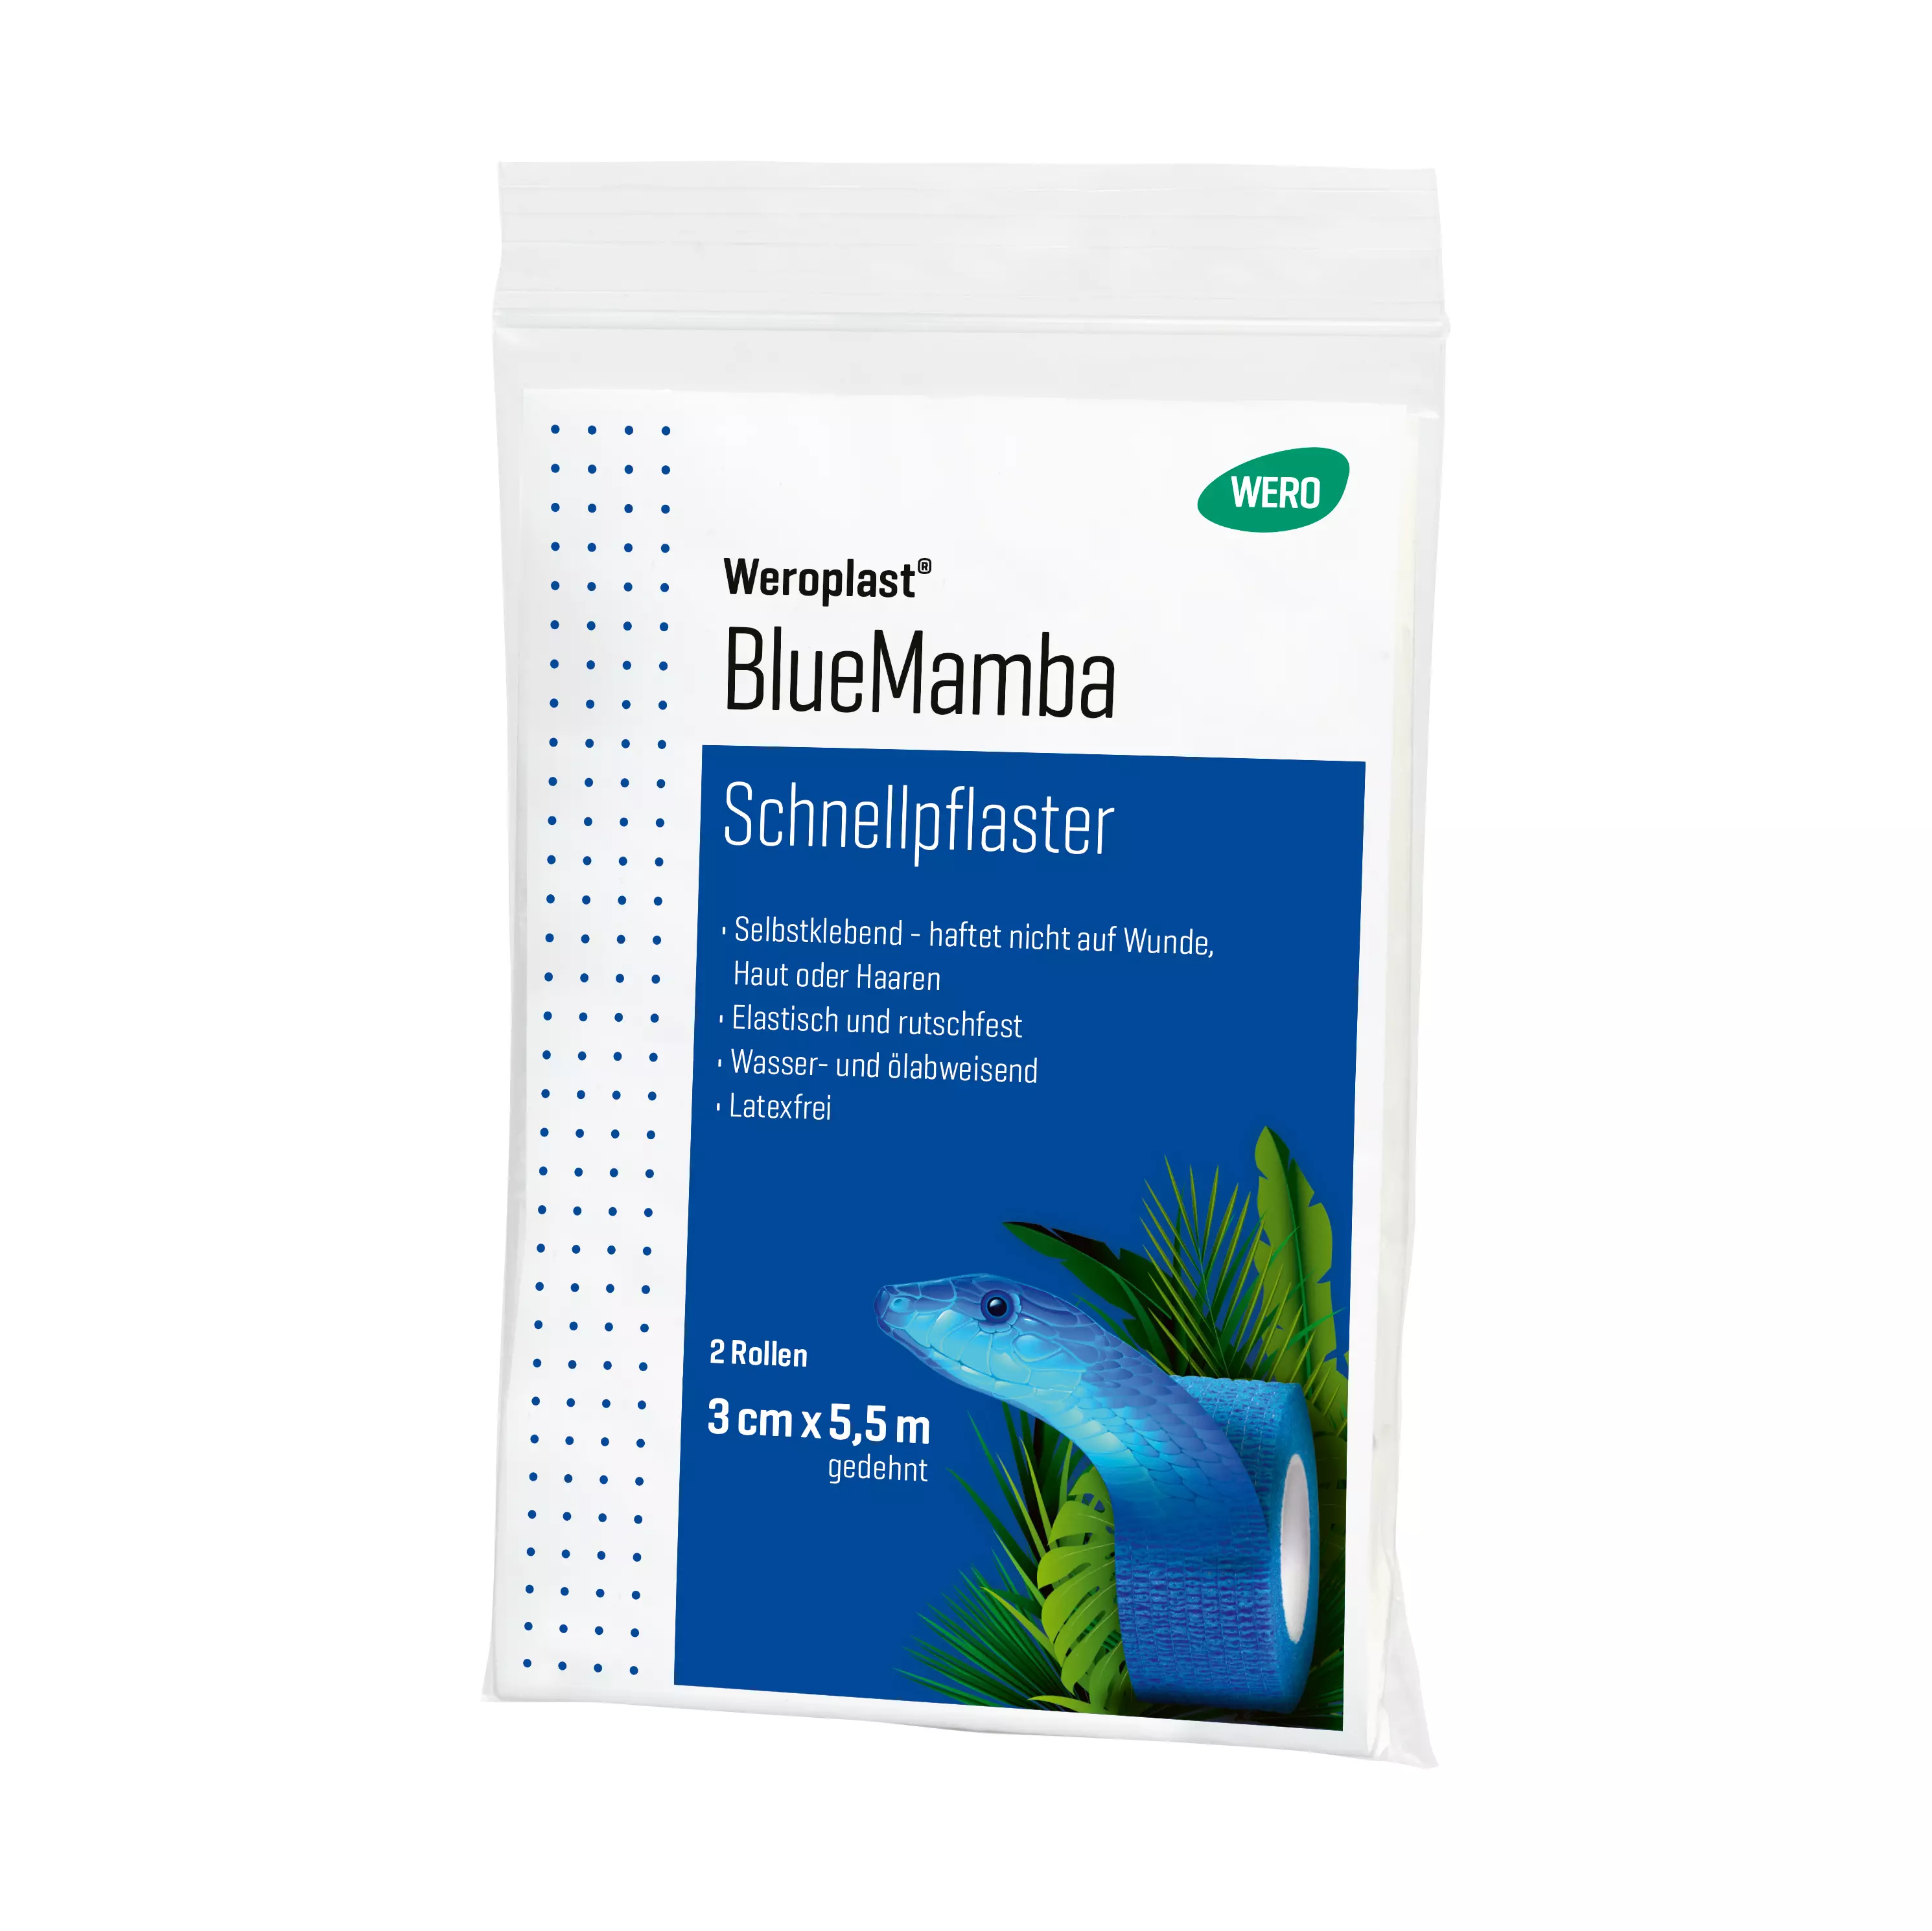 Schnellpflaster Weroplast® BlueMamba - 12 Stk